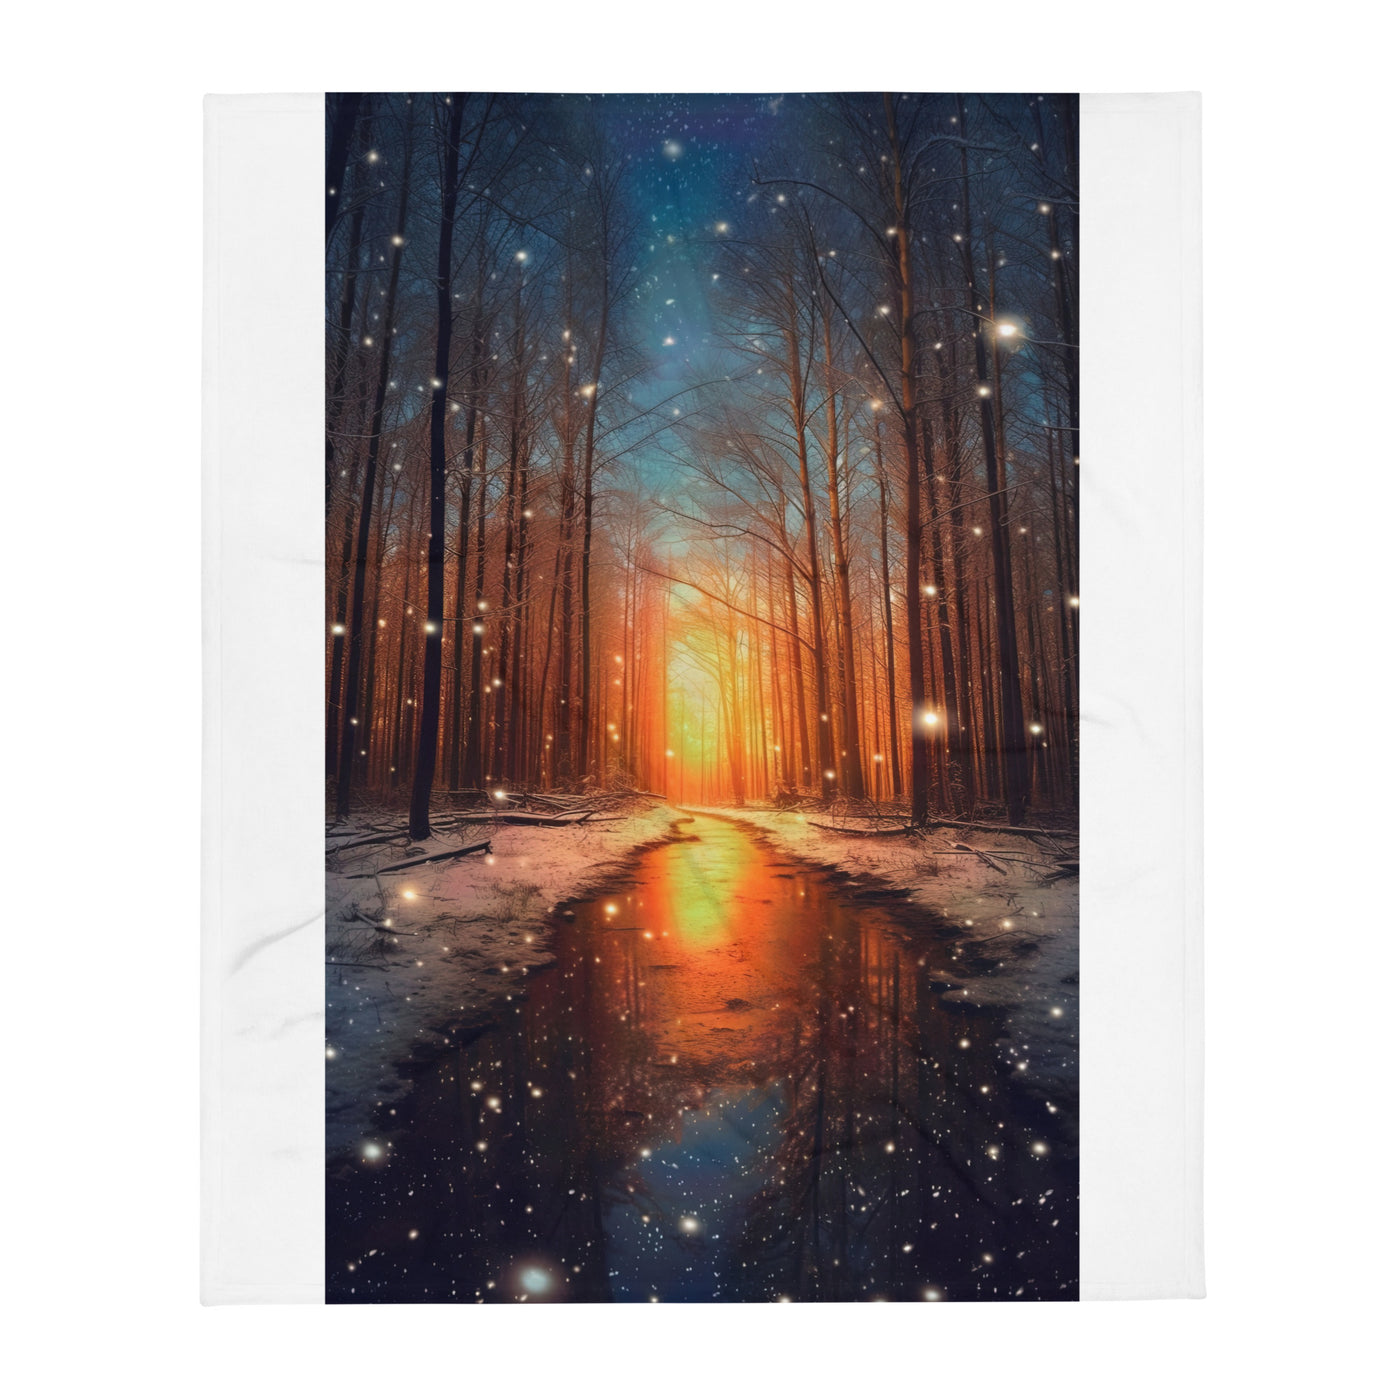 Bäume im Winter, Schnee, Sonnenaufgang und Fluss - Überwurfdecke camping xxx 127 x 152.4 cm